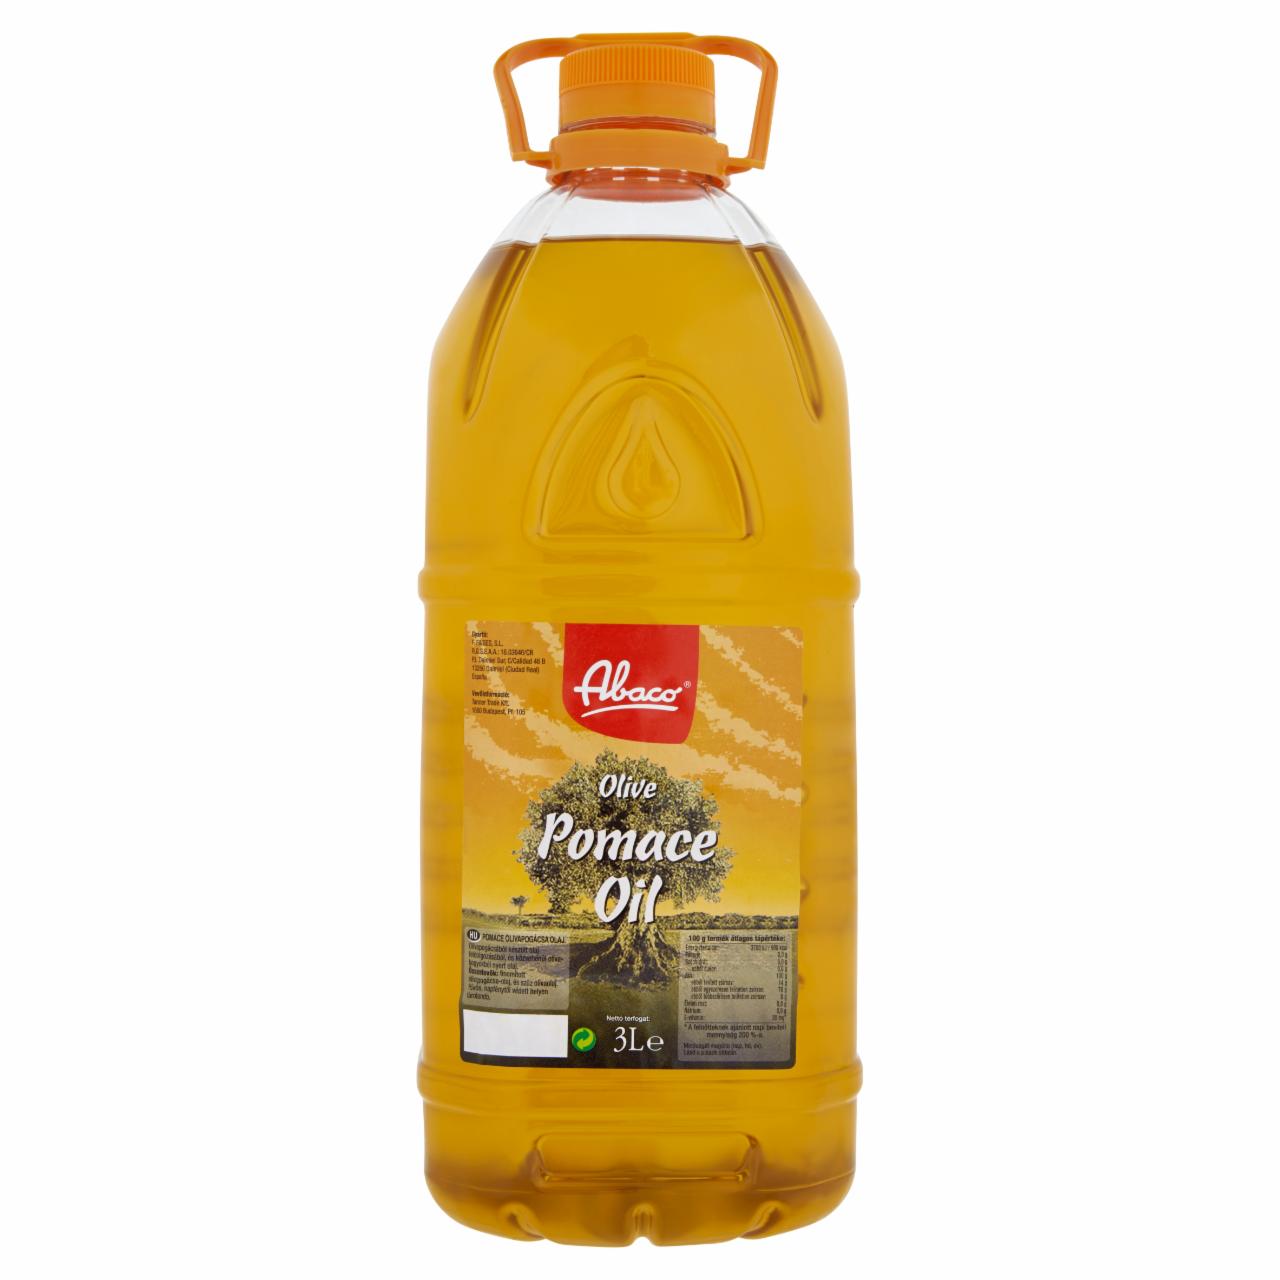 Képek - Abaco Pomace olívapogácsa olaj 3 l